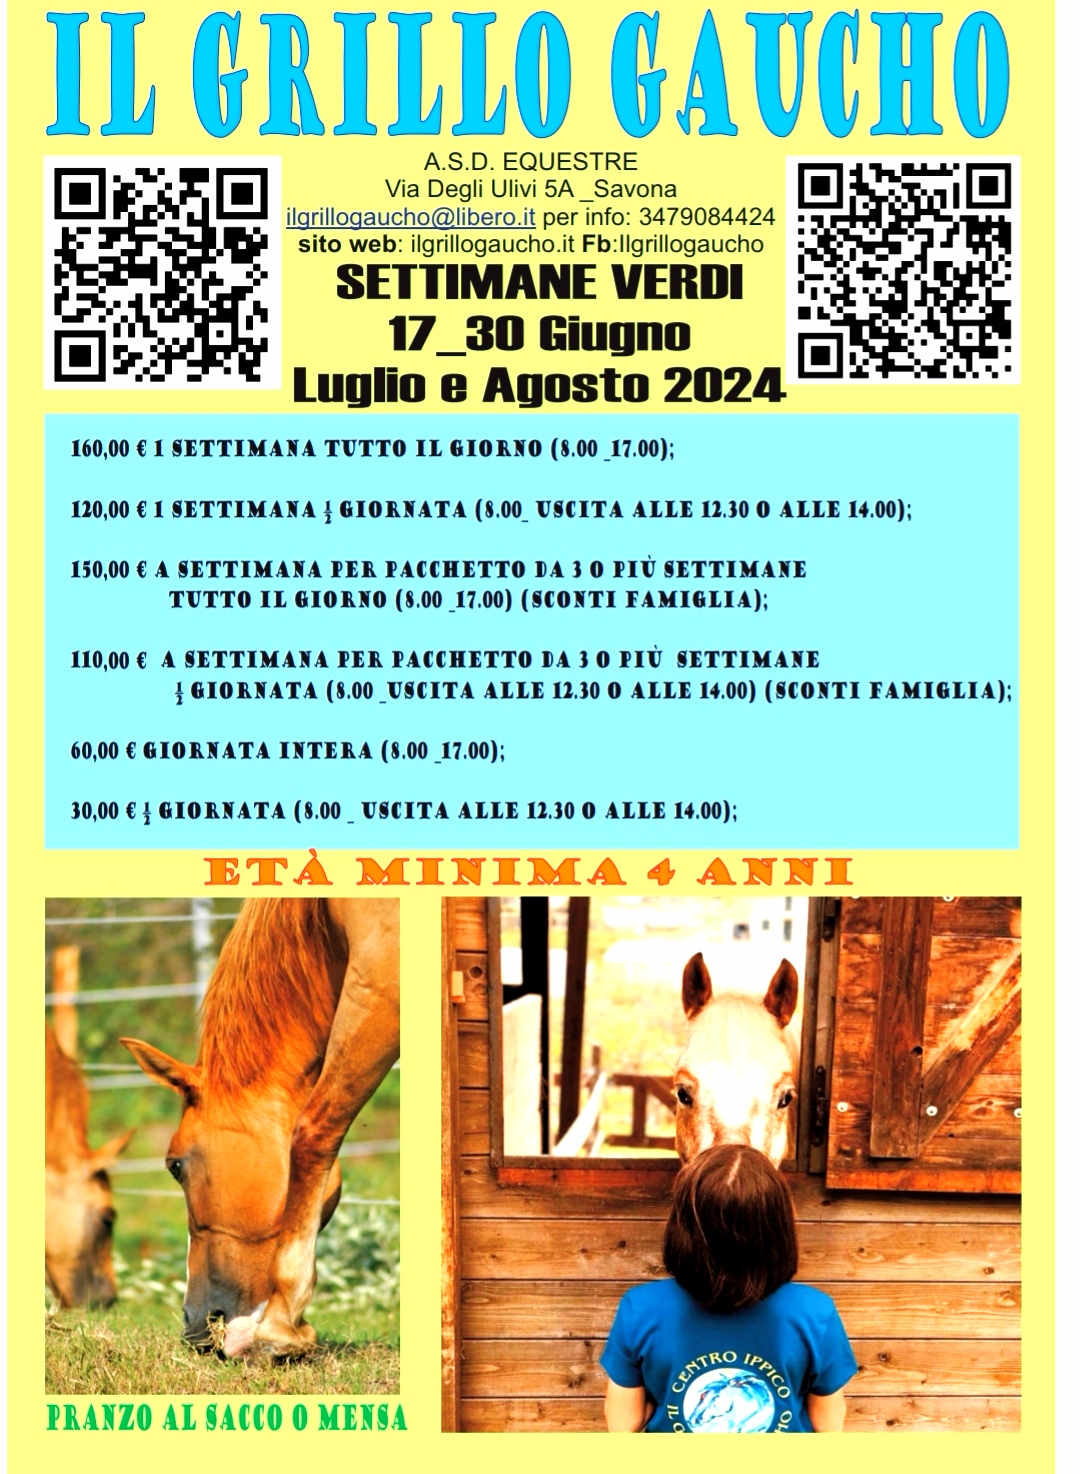 Settimane Verdi 2024 - Centro estivo Savona - Campo solare Savona 2024